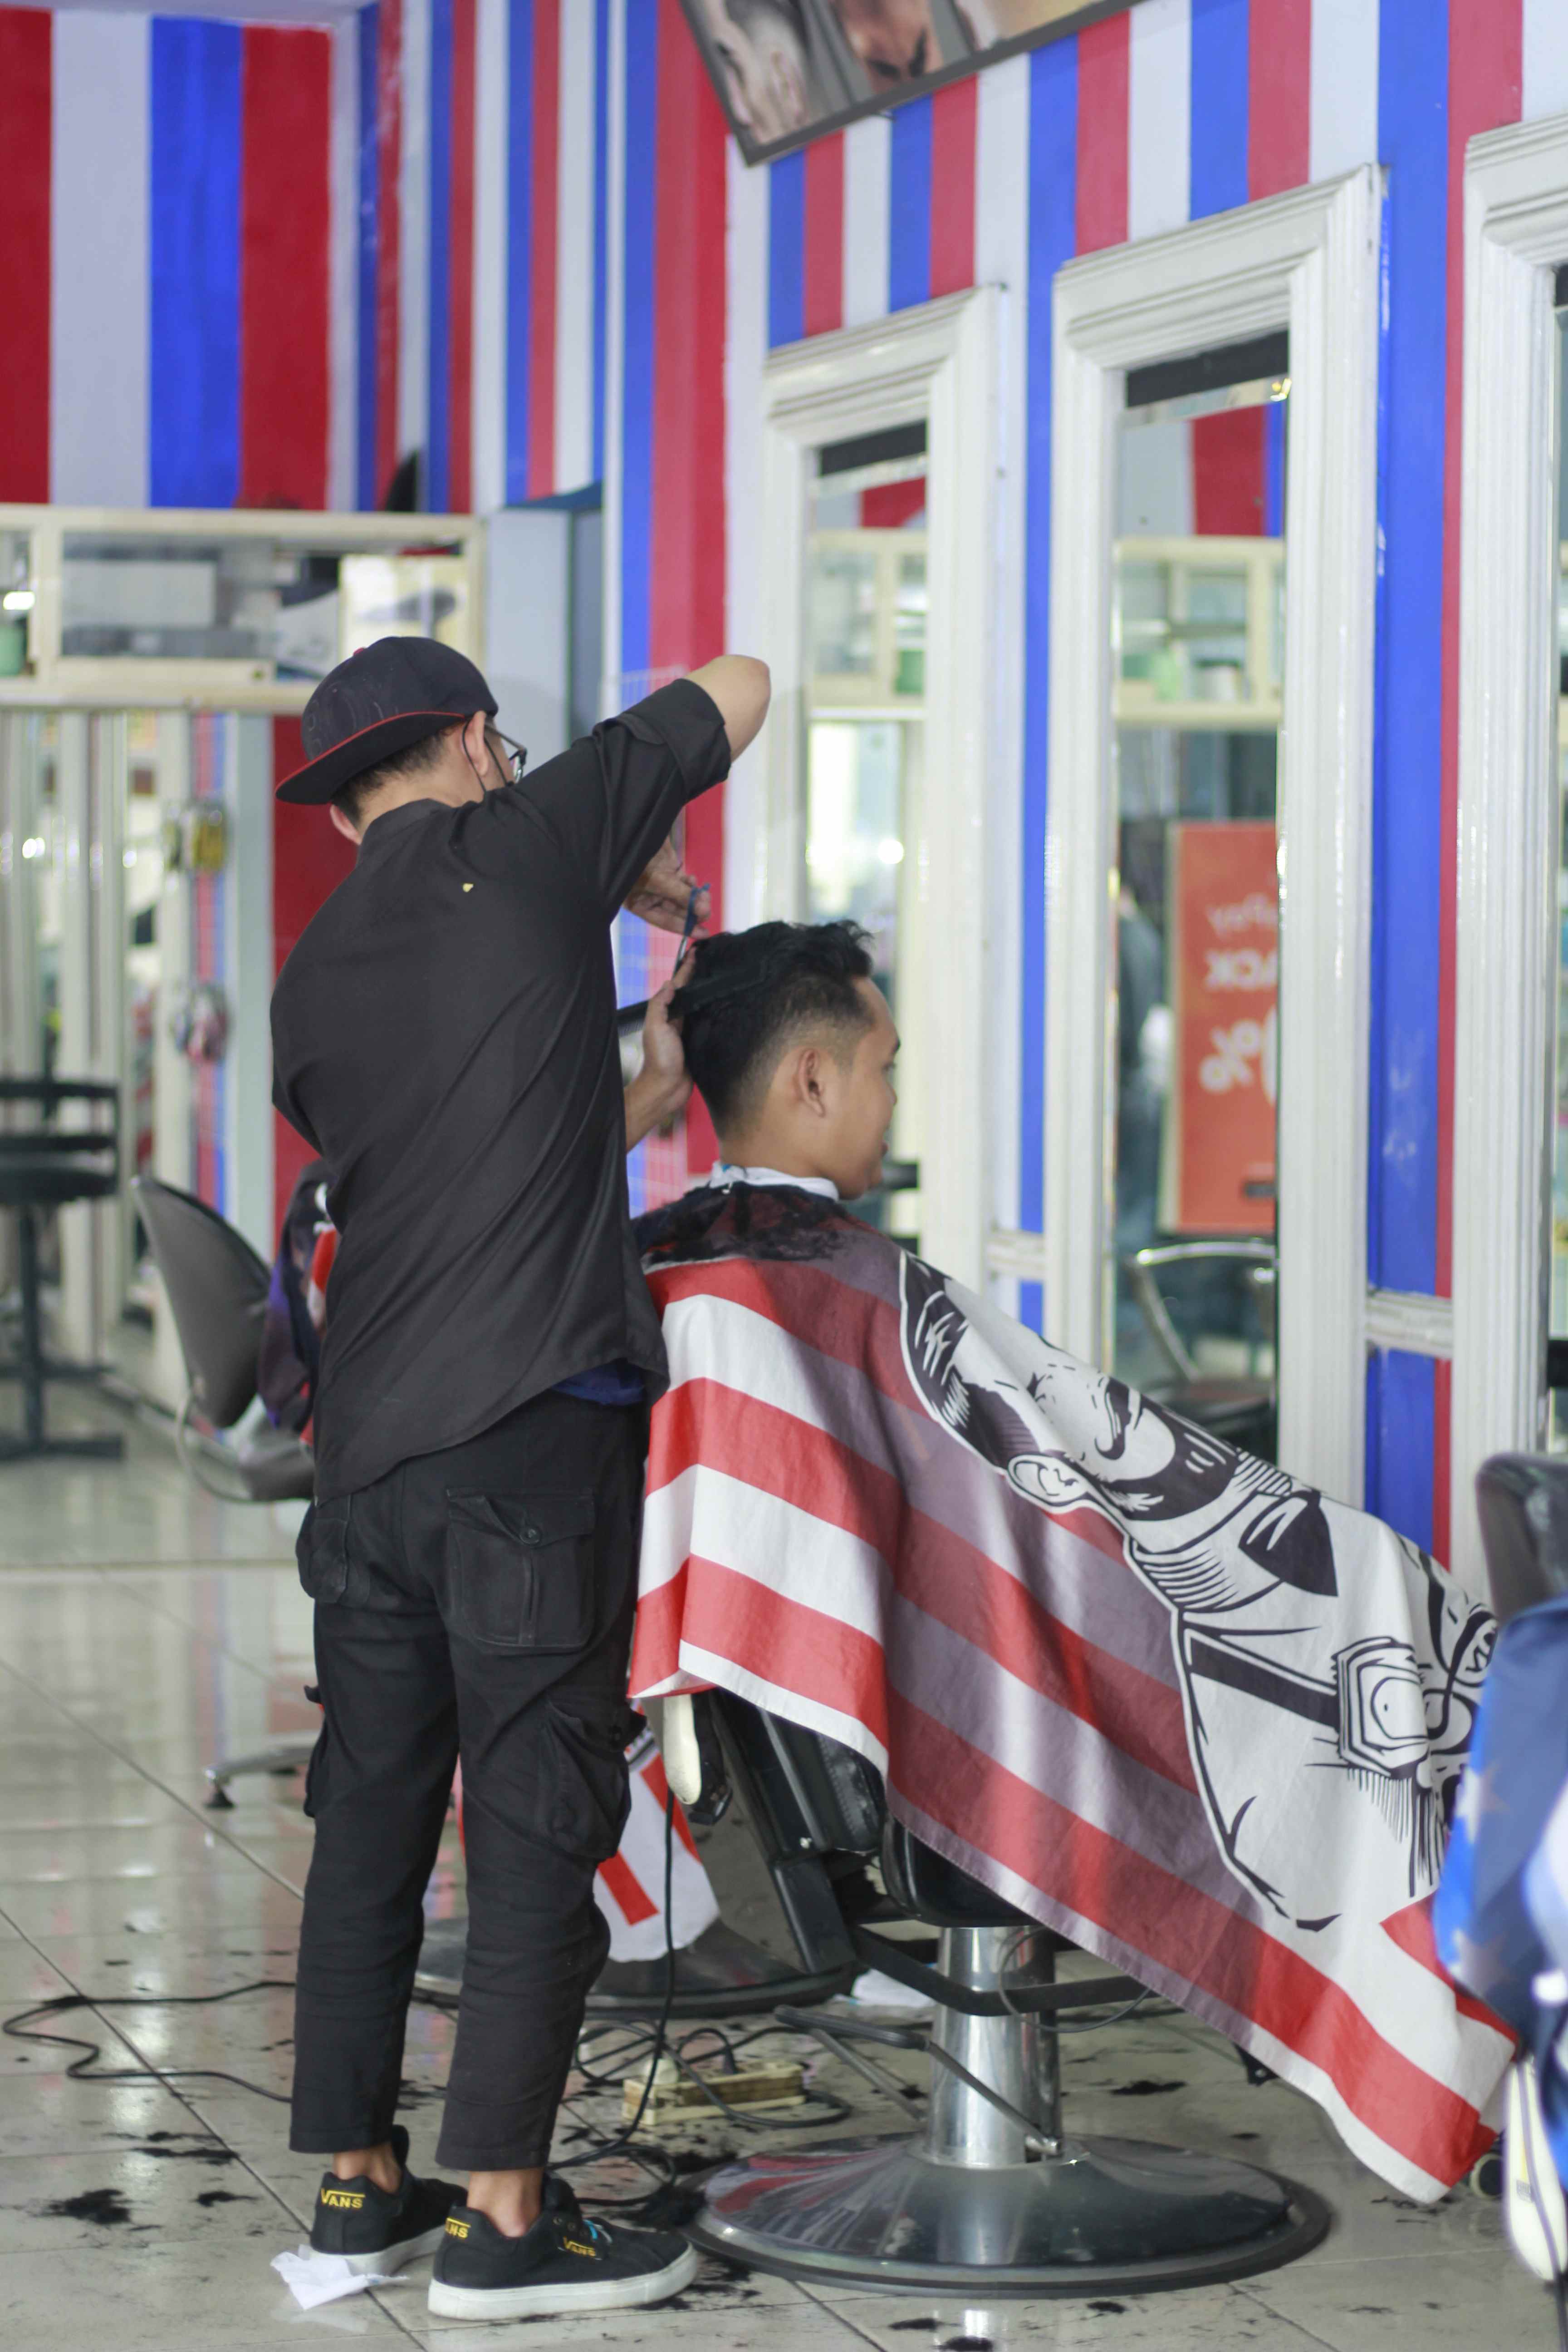 Tempat Barbershop Di Jl. Tumenggung Suryo Terbaik